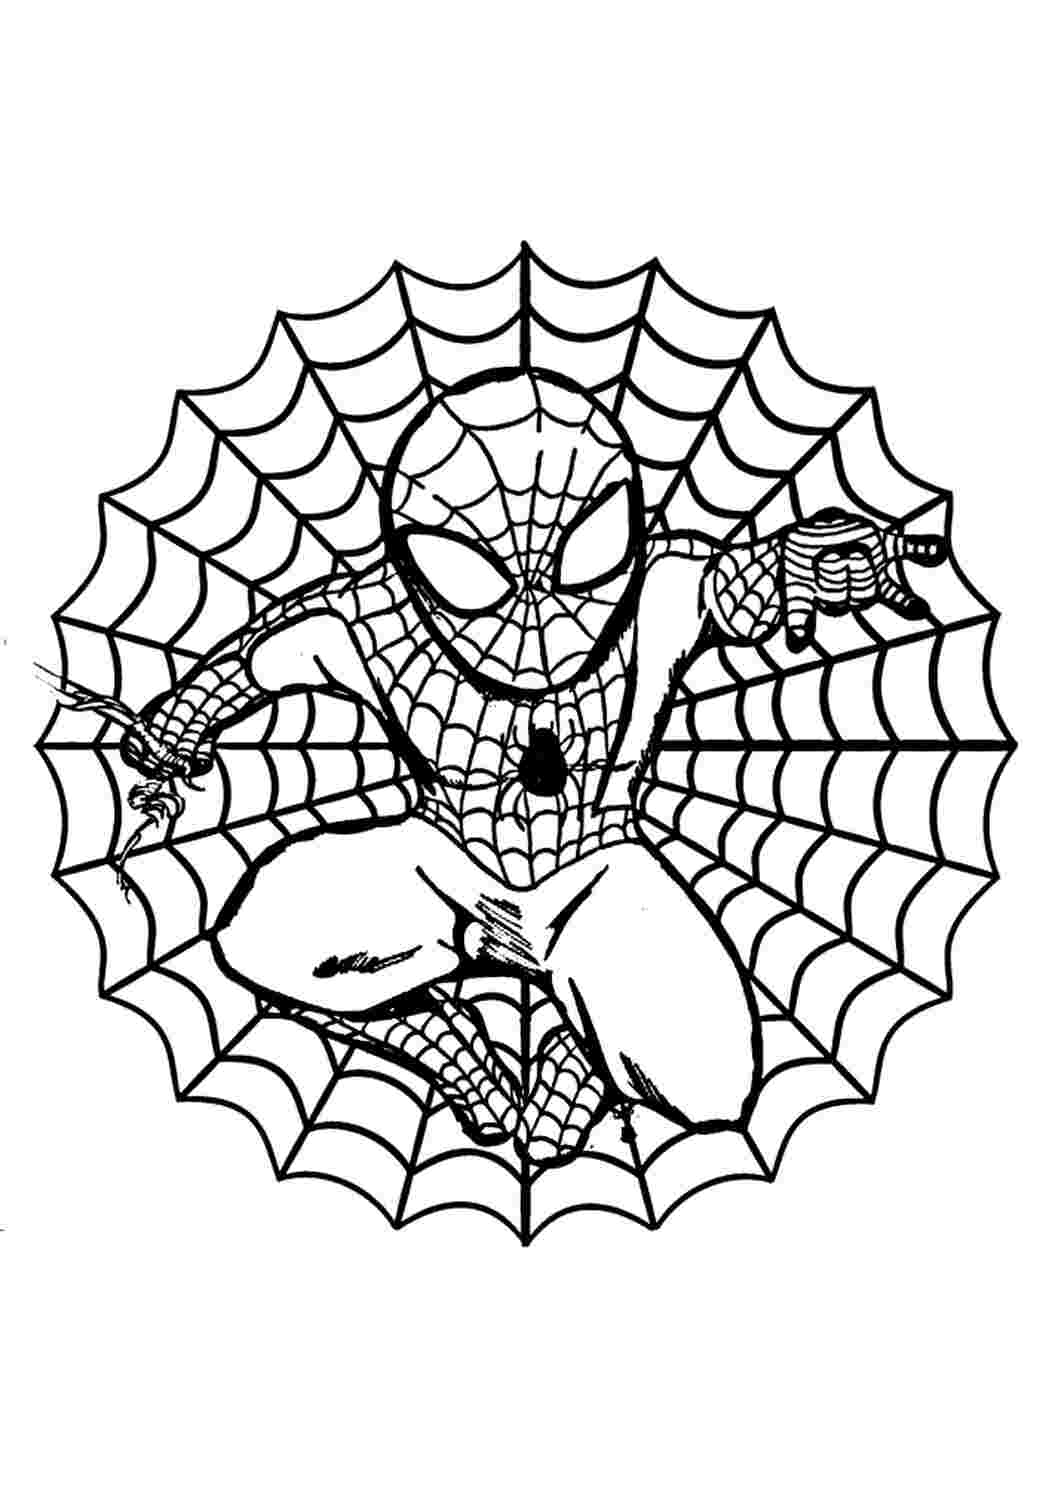 Раскраска с большим количеством деталей - Человек-паук Раскраски скачать и распечатать бесплатно.